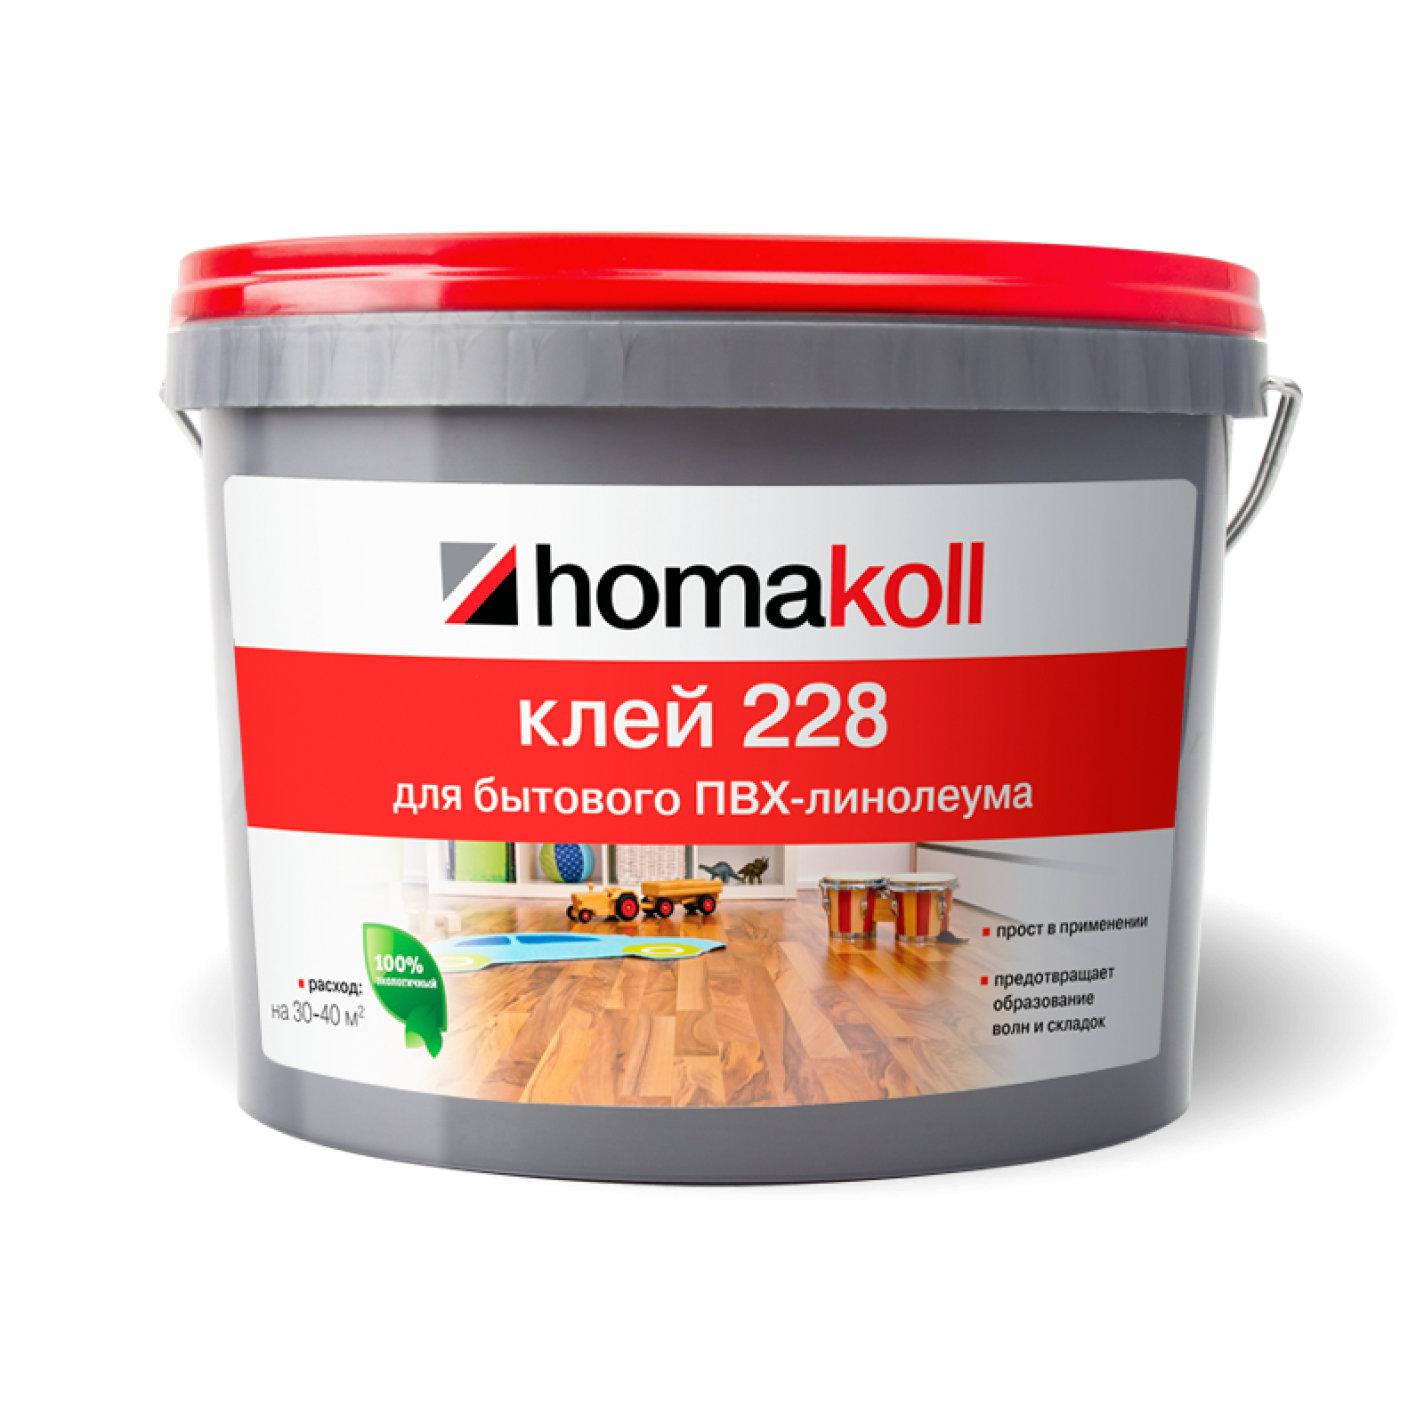 Клей homakoll 228 (1,3 кг)